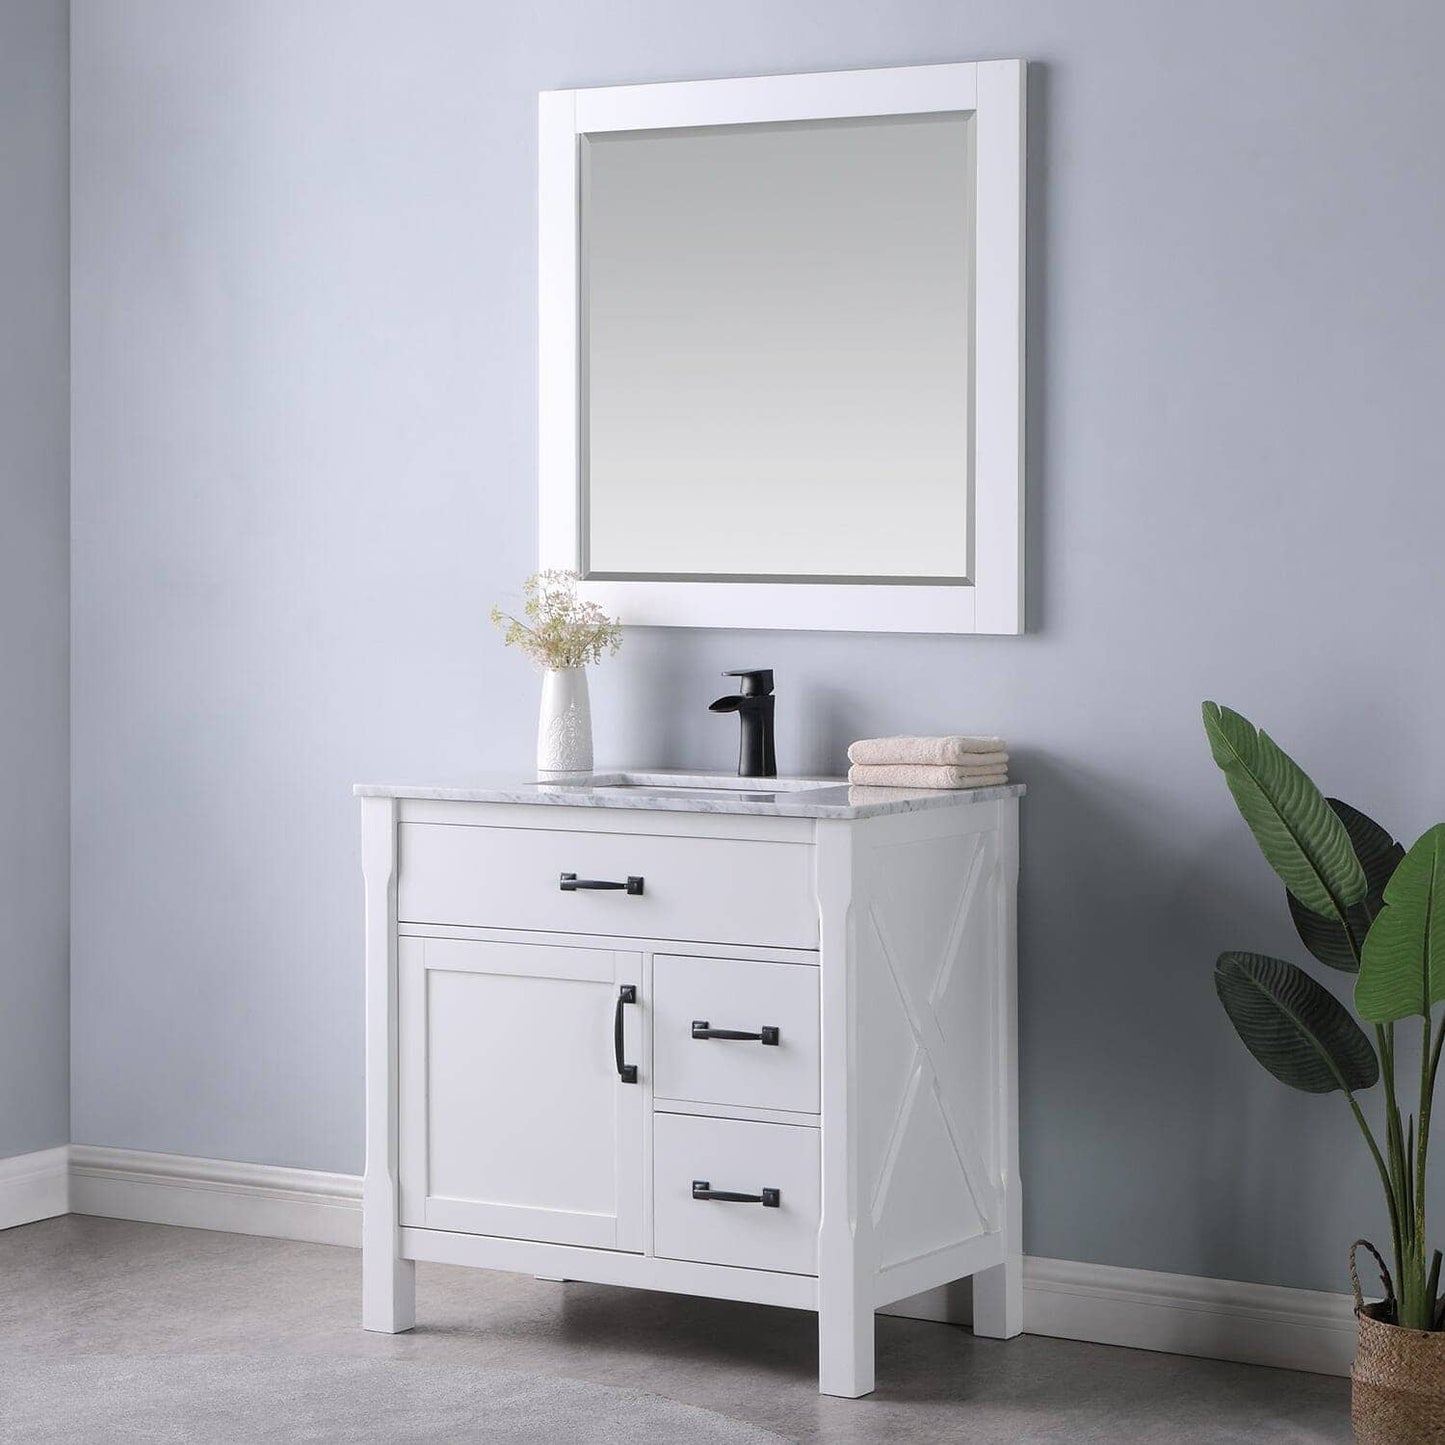 Bathroom Mirror - Altair Maribella 34W x 36H - 535030-MIR-WH